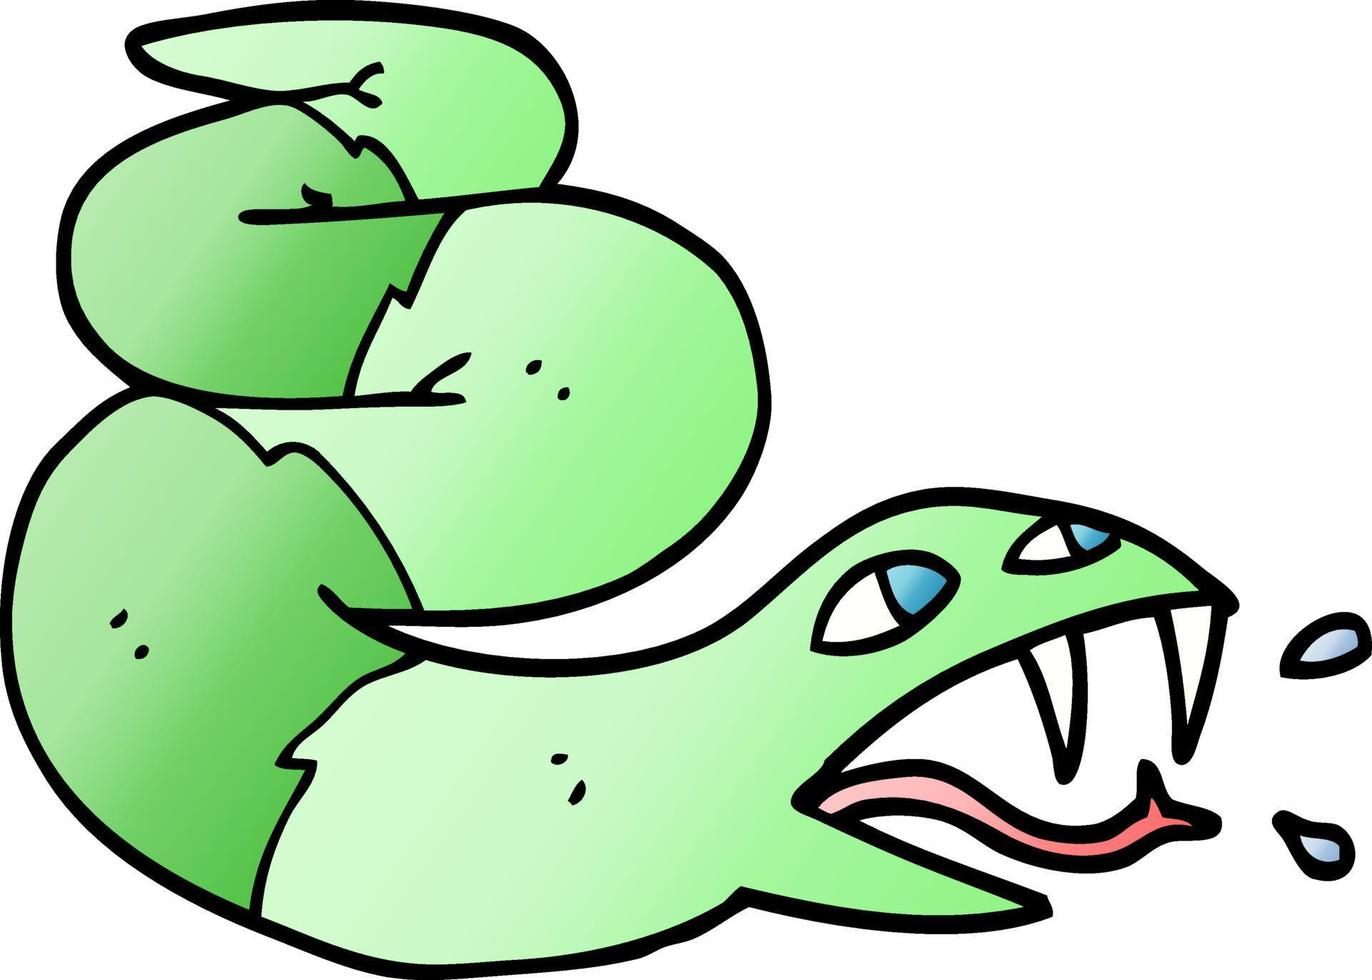 Vektor-Gradient-Illustration Cartoon zischende Schlange vektor